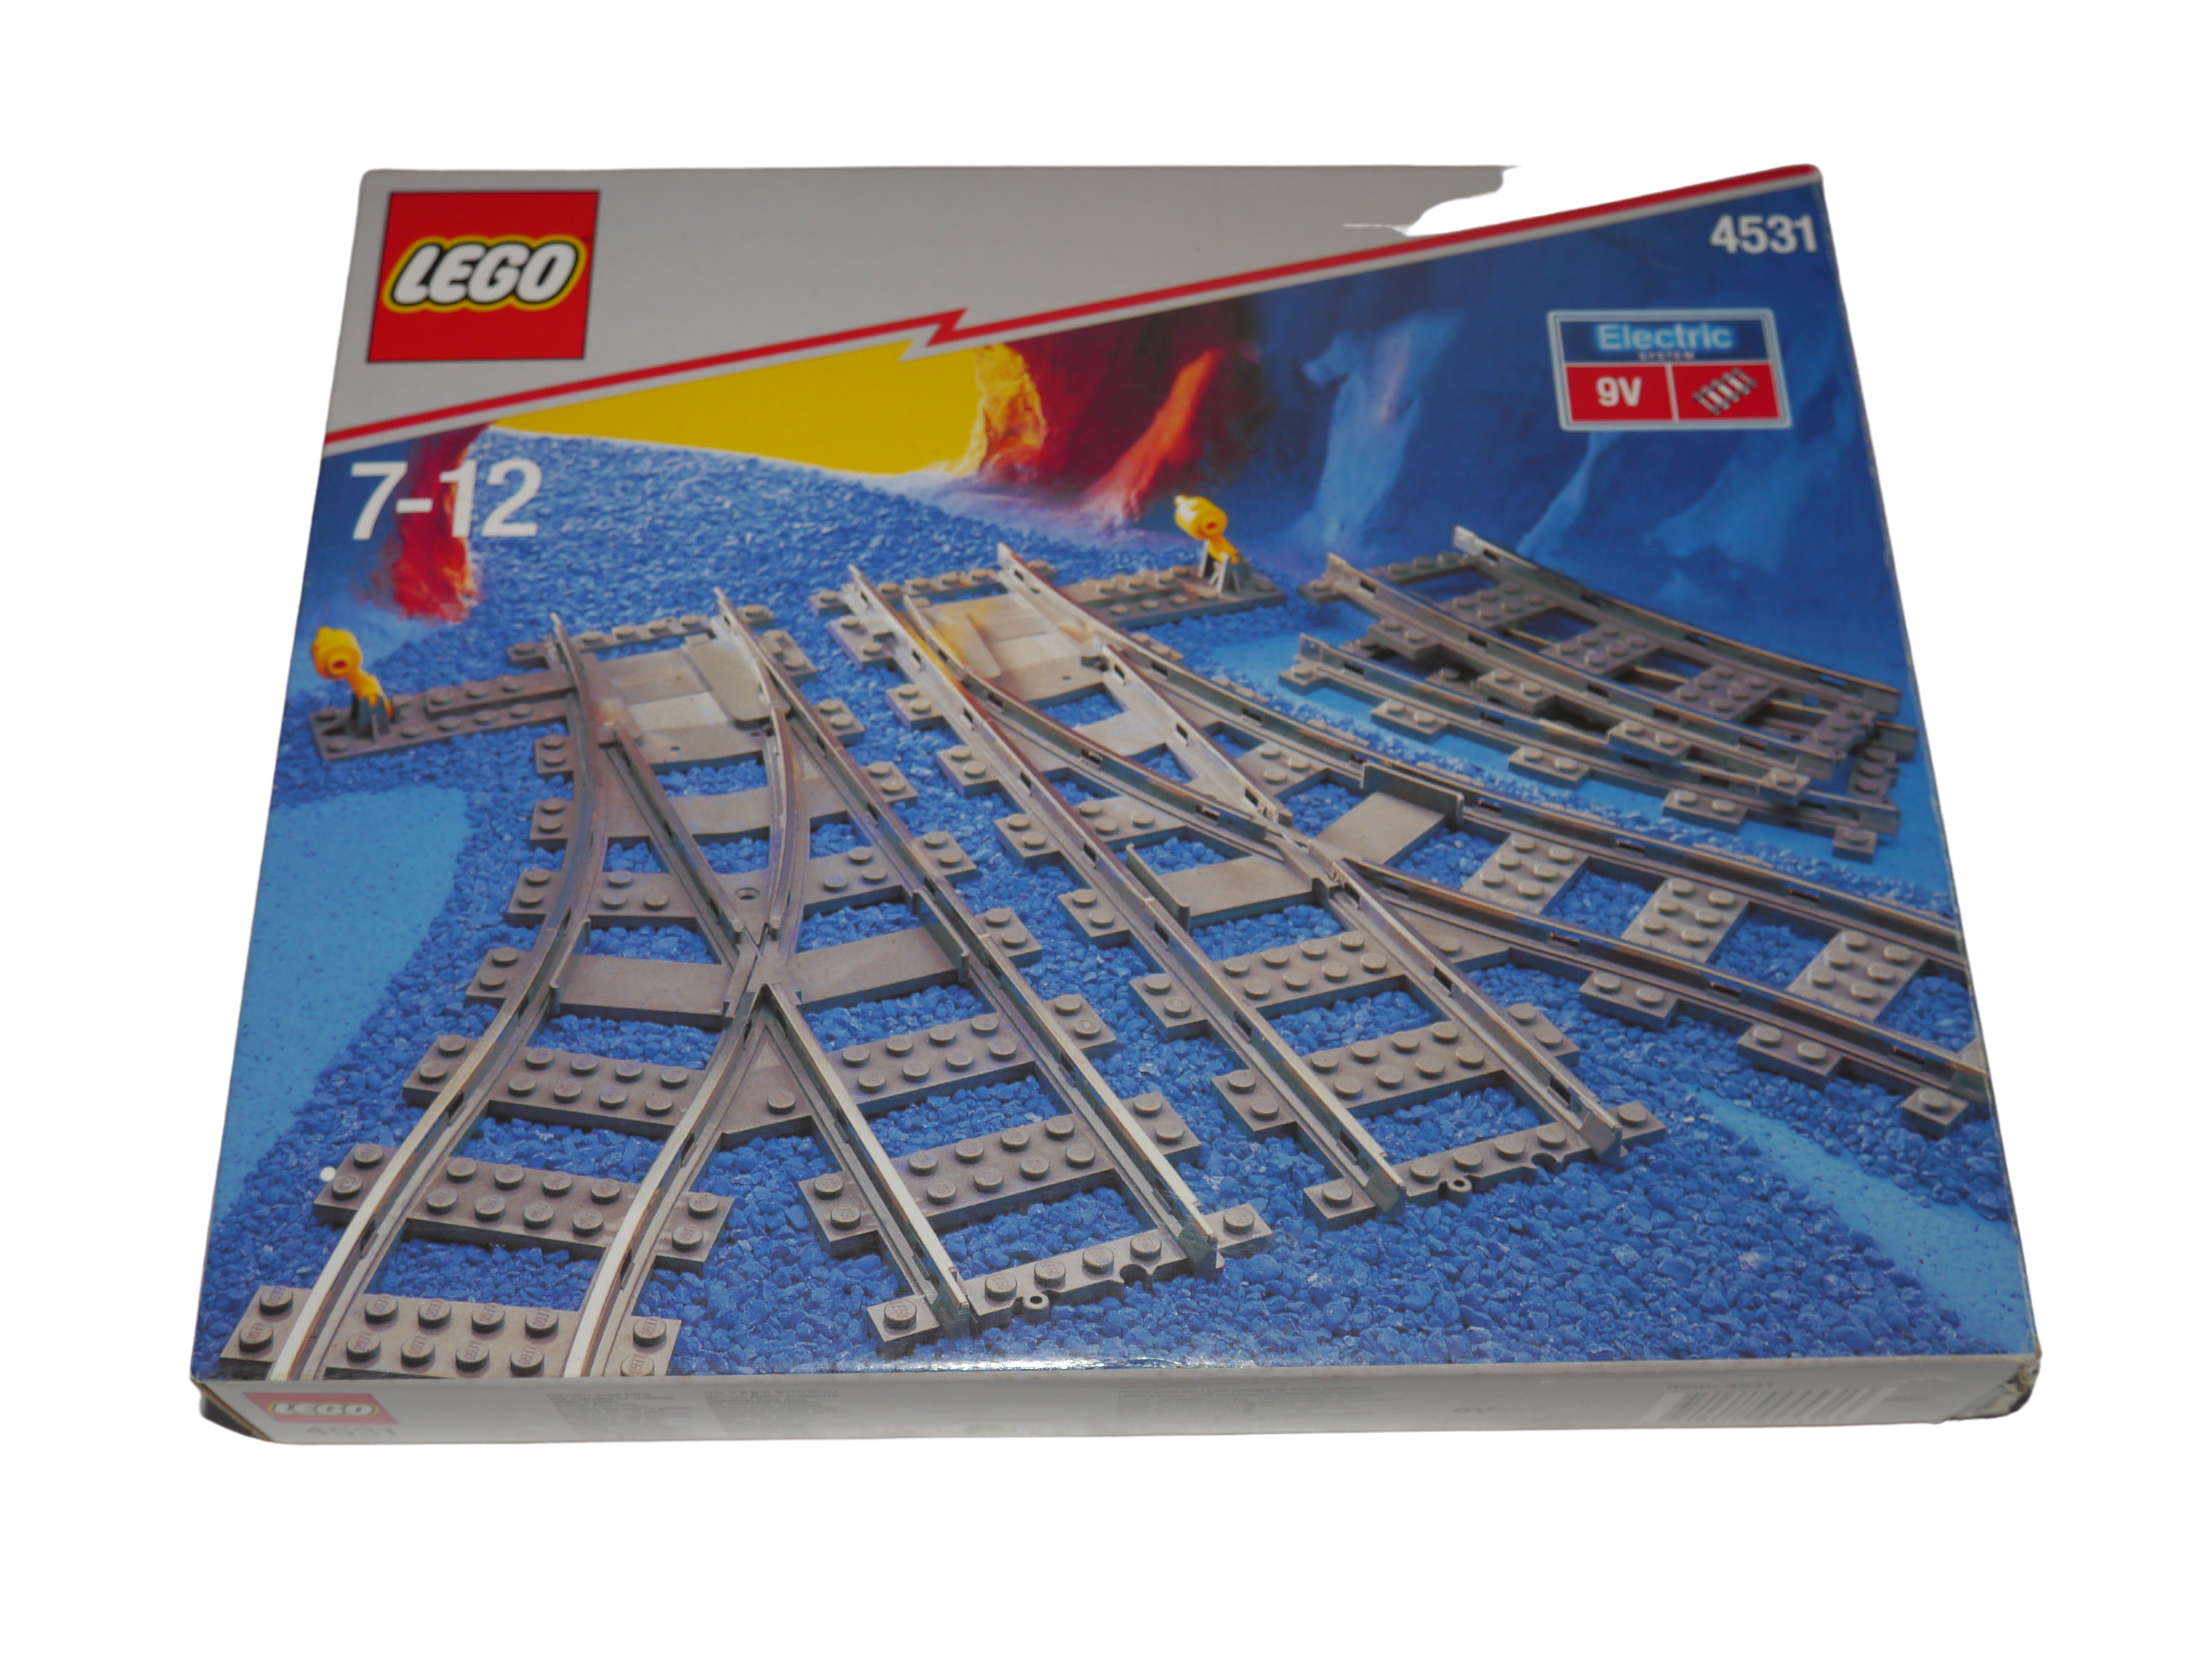 Lego® Eisenbahn TRAIN 4531 !! LEERE BOX !! NUR OVP VERPACKUNG !! ZUG - Bild 1 von 1